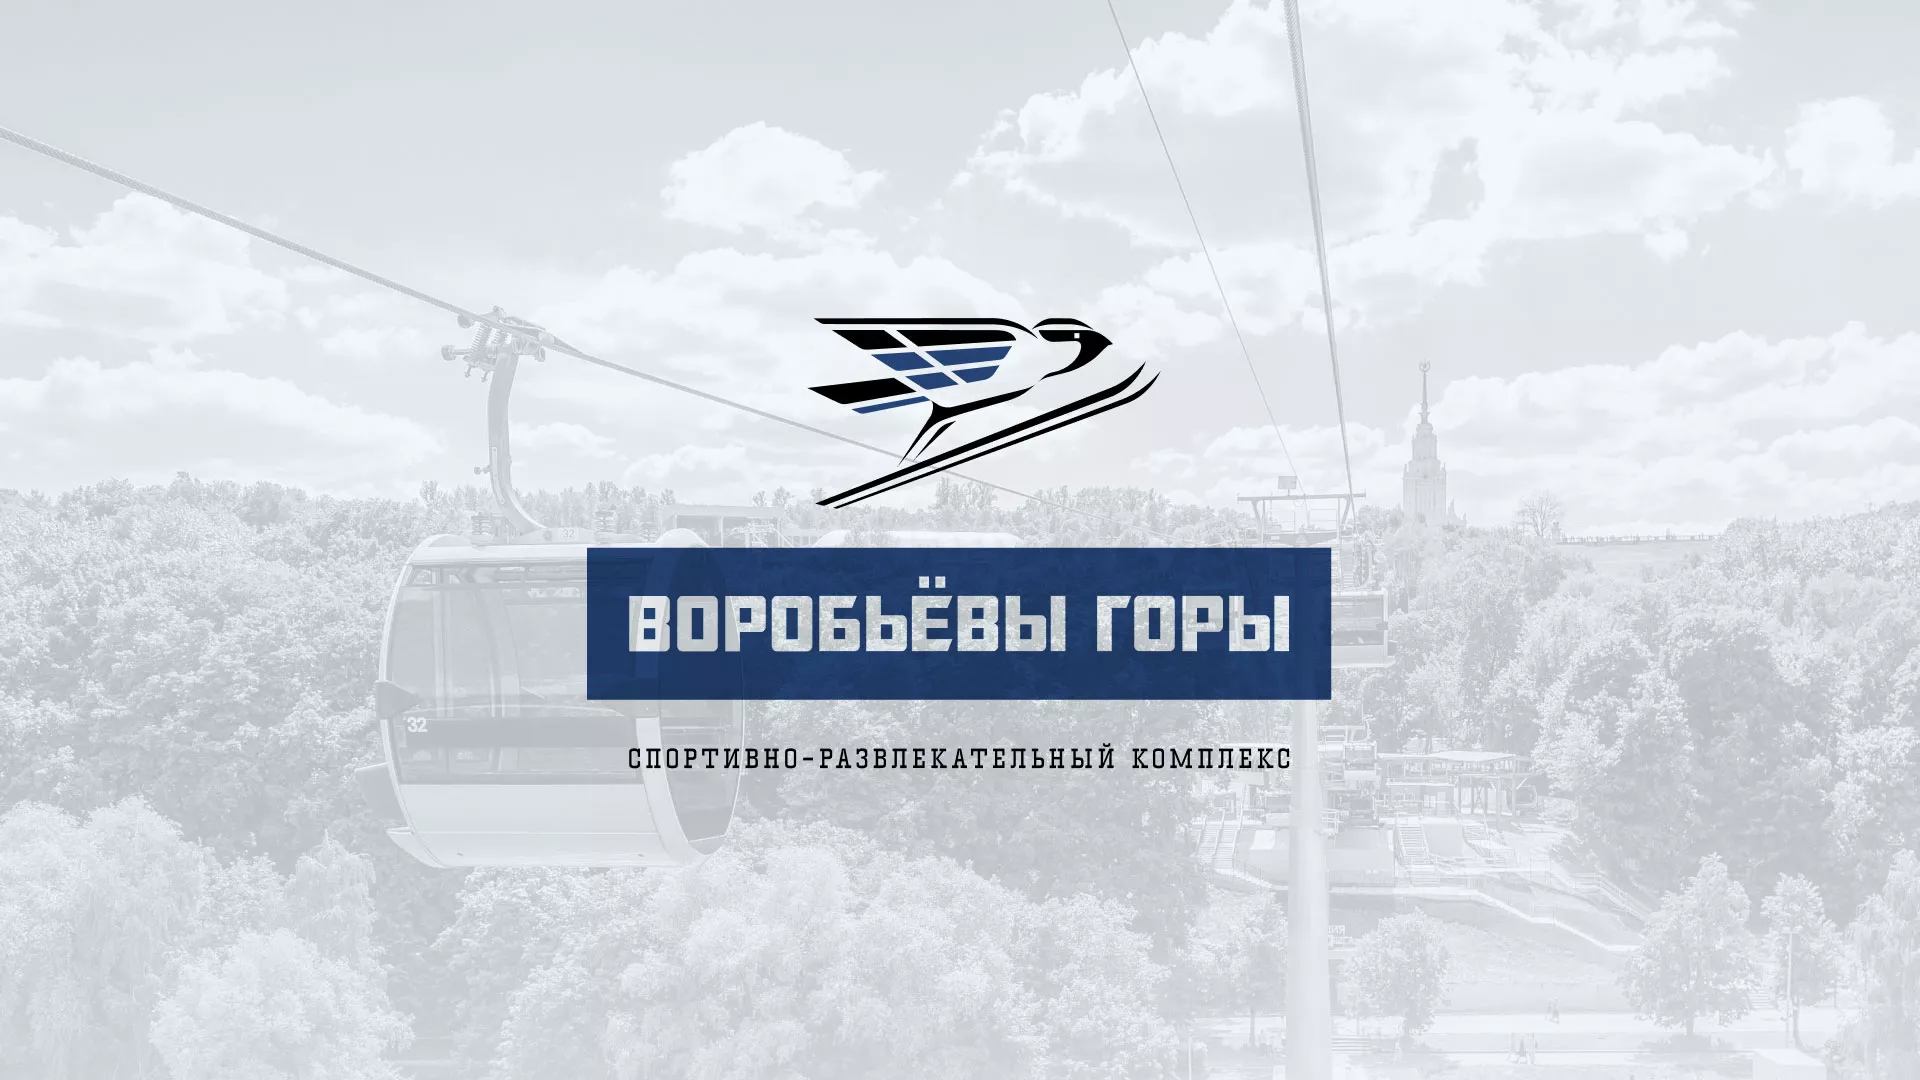 Разработка сайта в Гаджиево для спортивно-развлекательного комплекса «Воробьёвы горы»